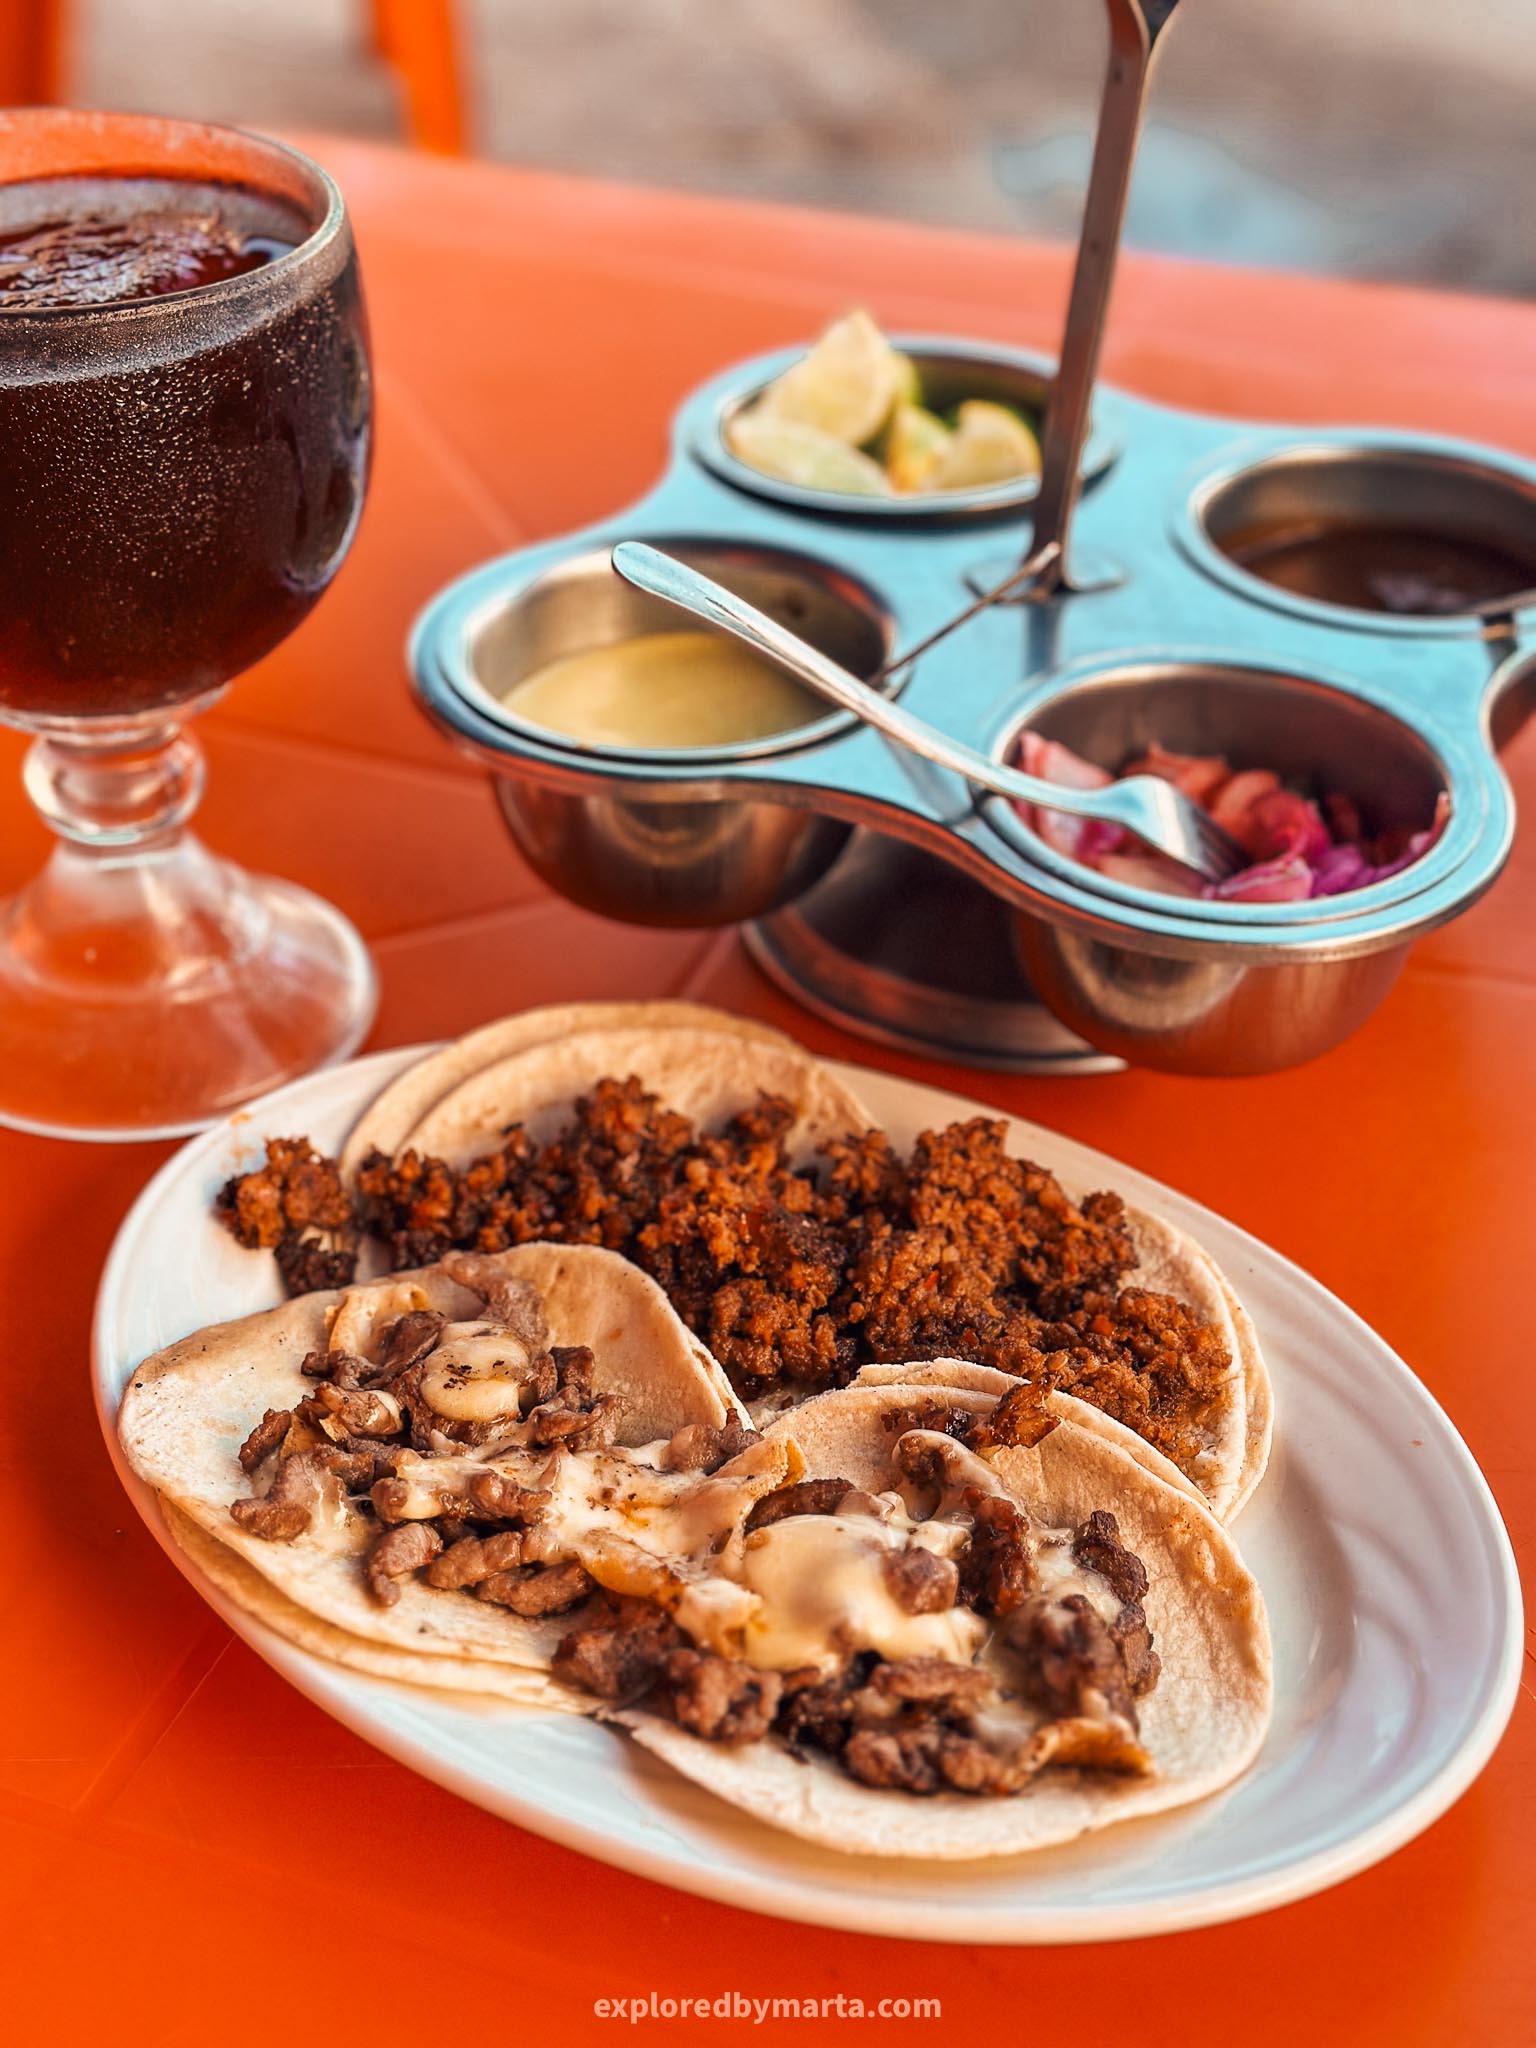 Best tacos in Cancun, Mexico-Taqueria Bonampak